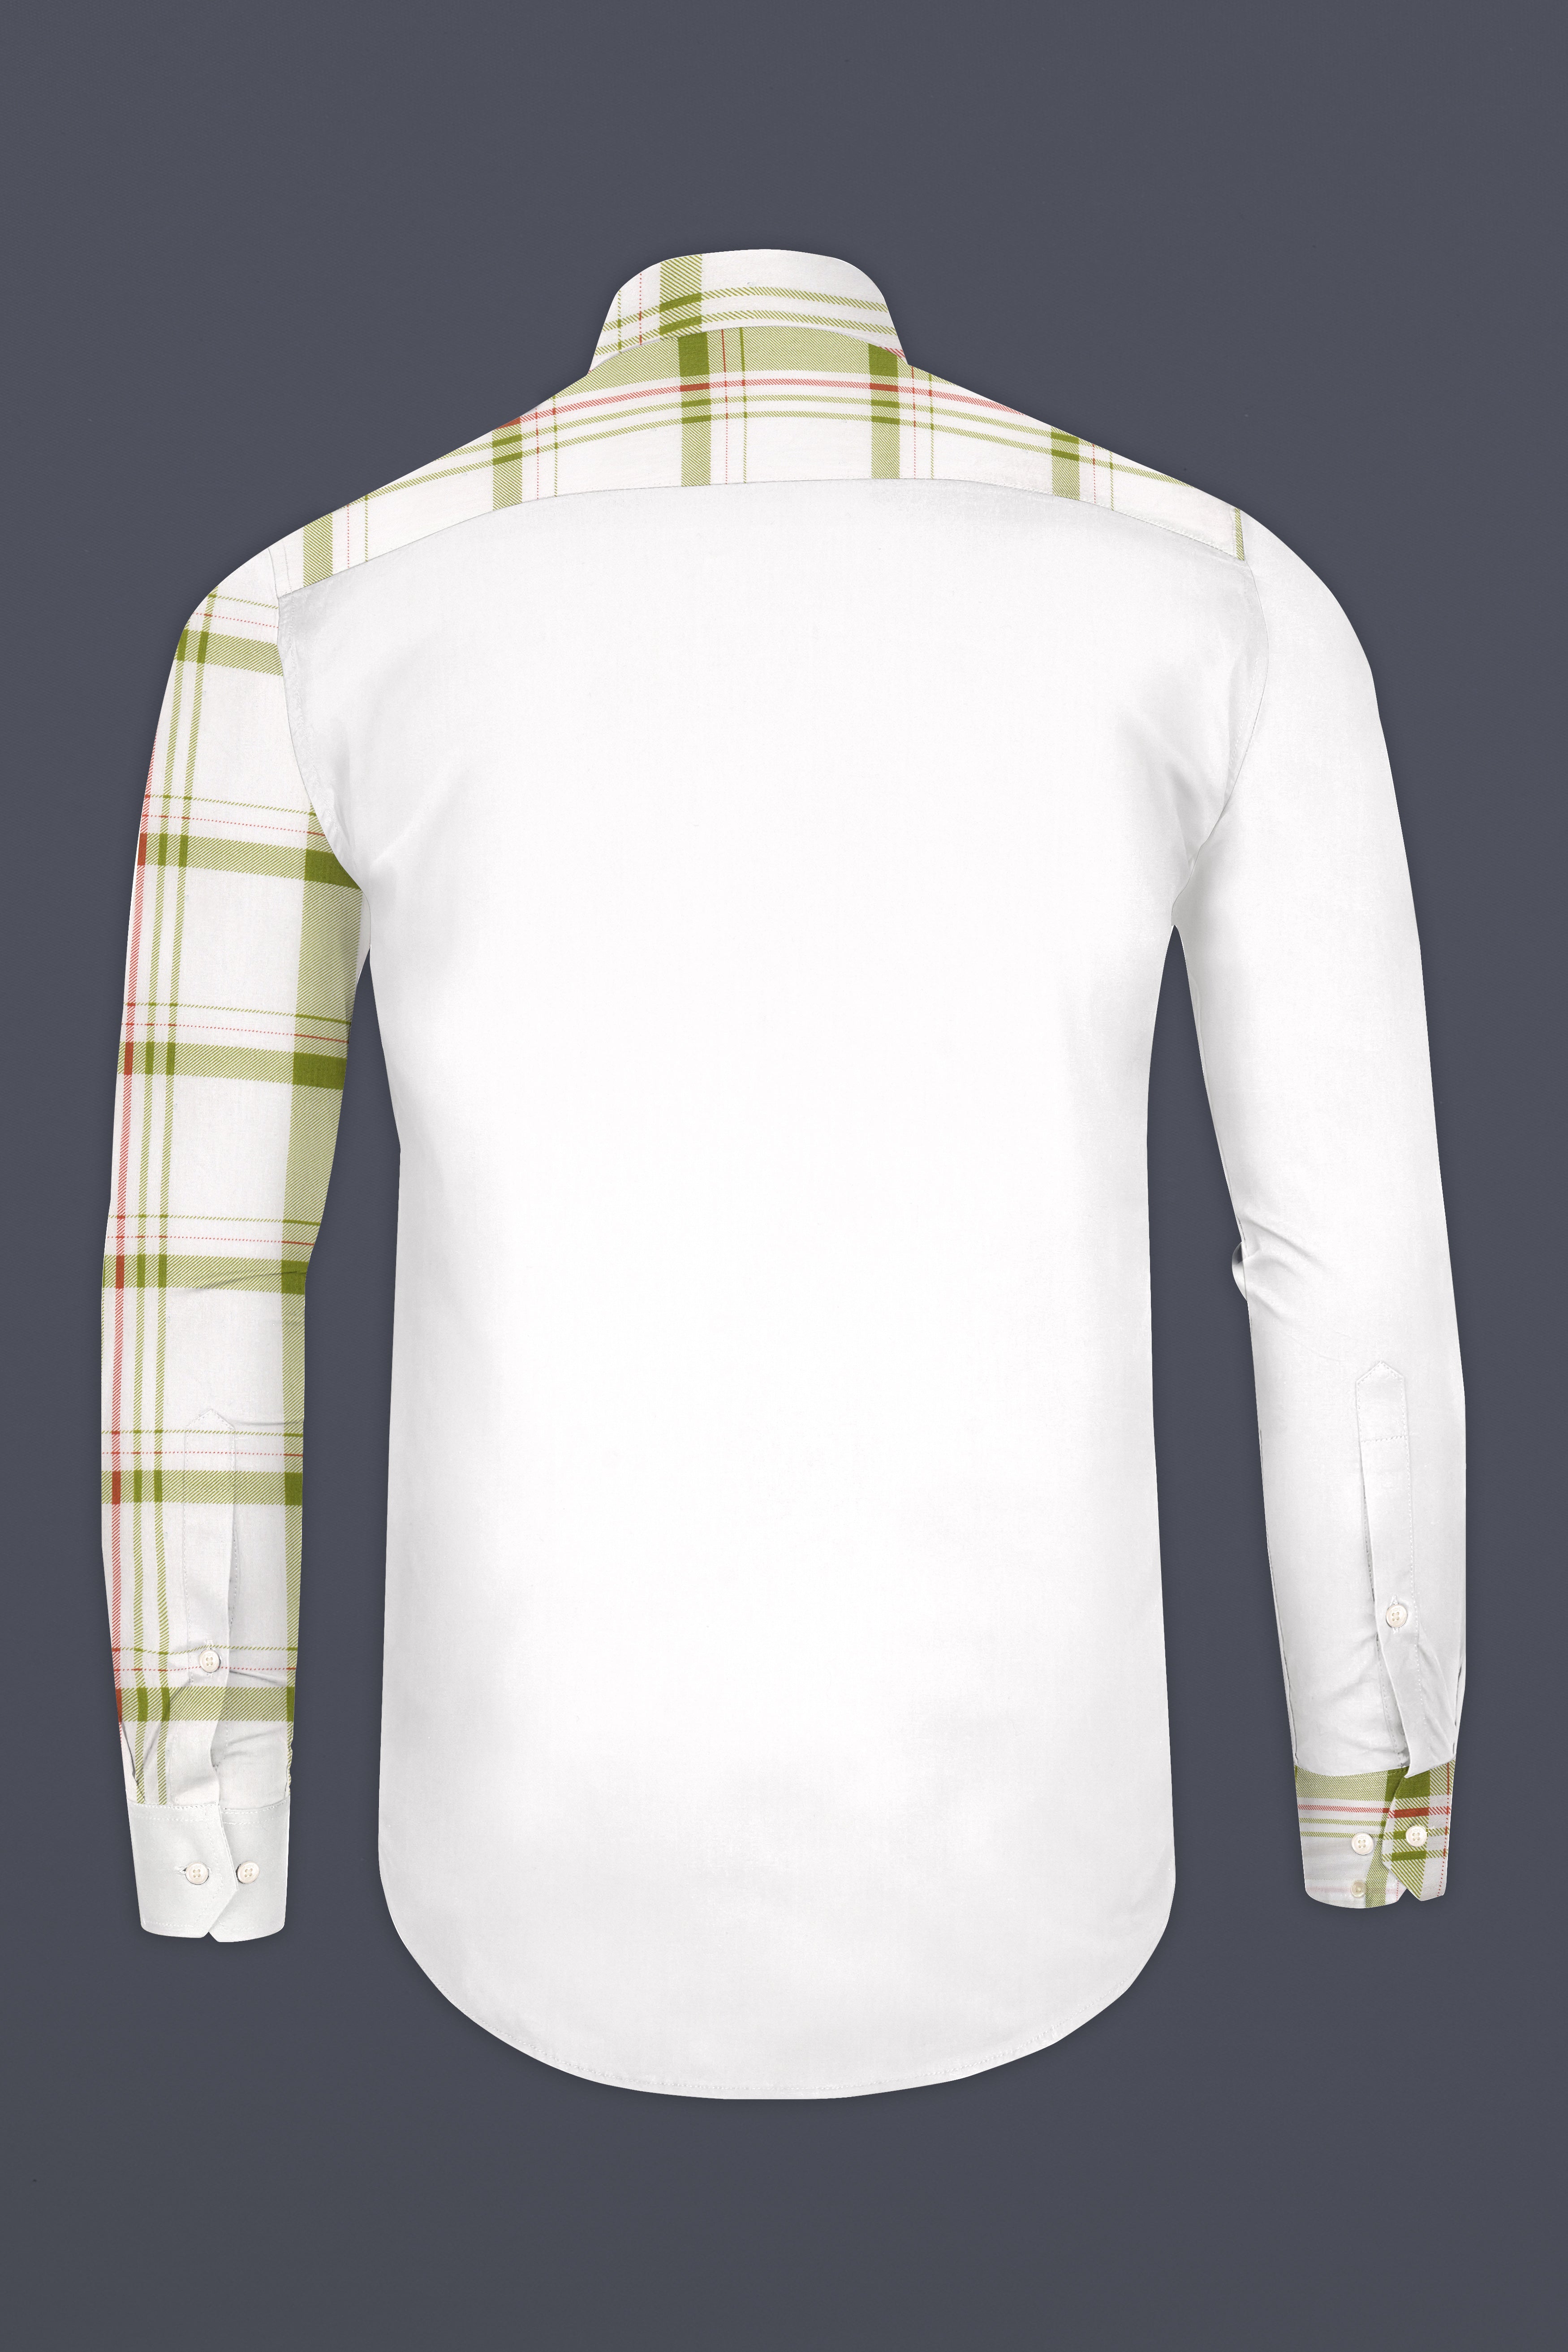 Half White Half Checkered Super Soft Premium Cotton Designer Shirt